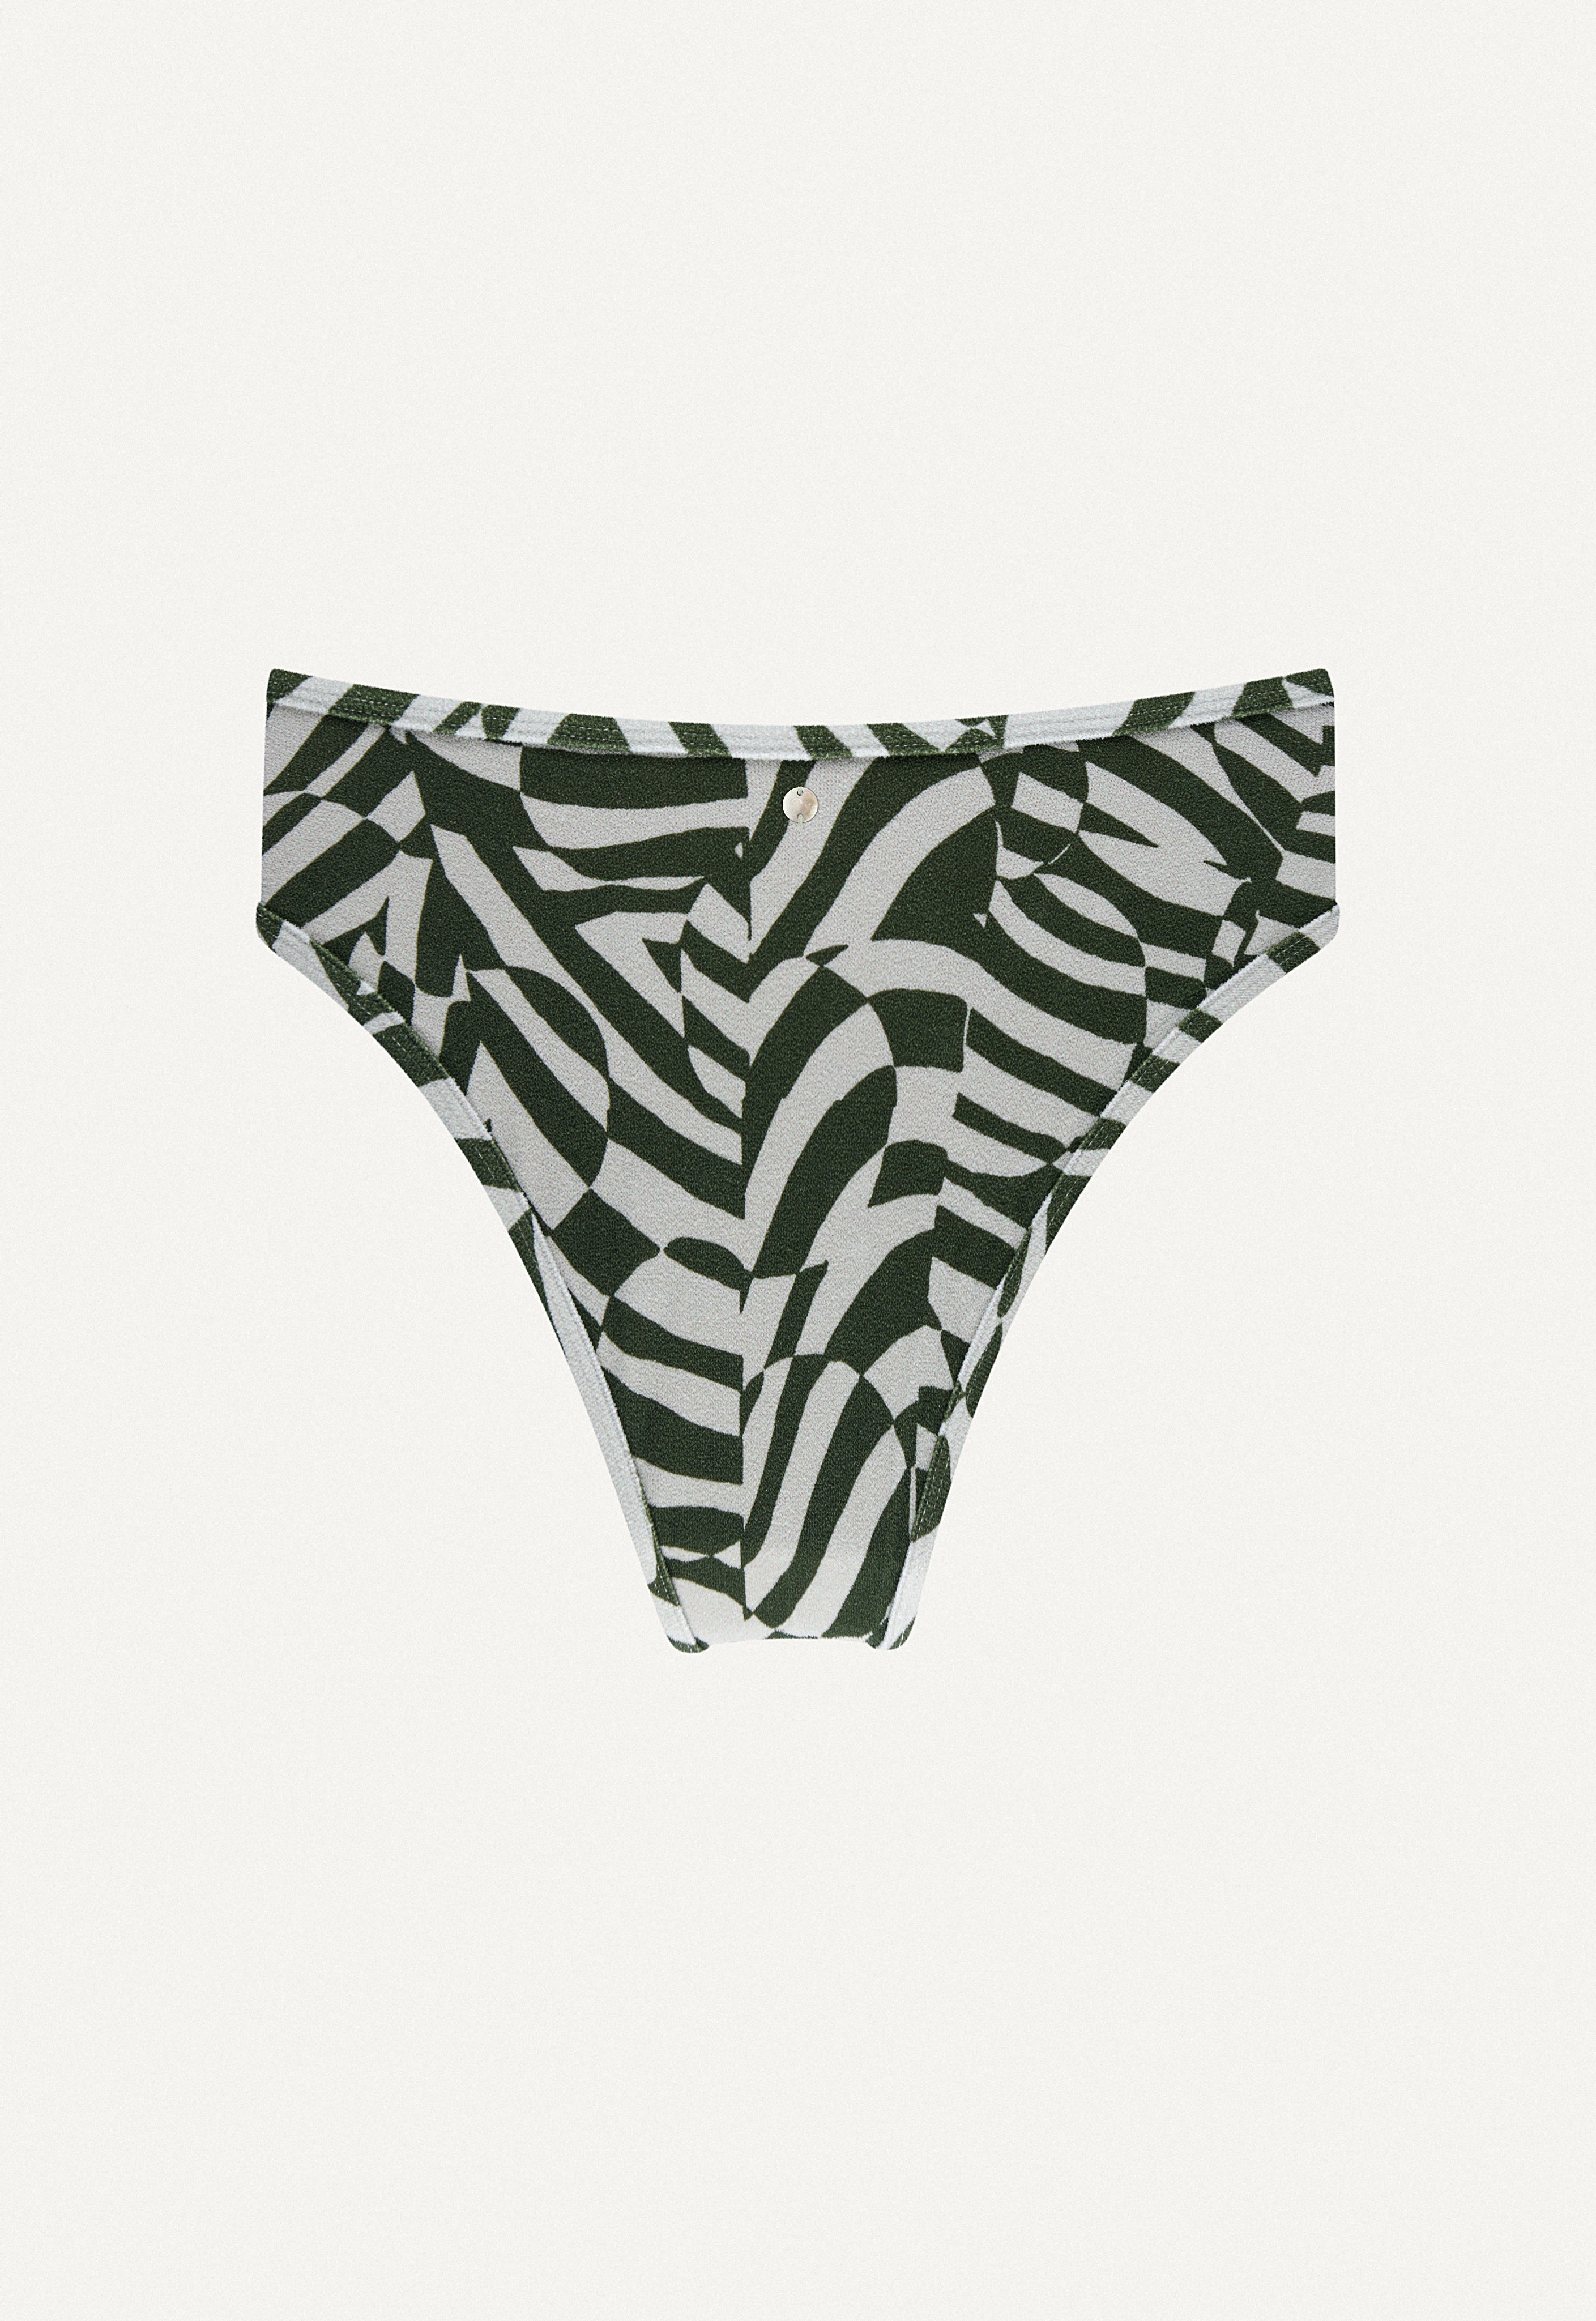 Oy-bikini-hose-A23-swimwear-Calima-zebra-print-frottee-back.jpg